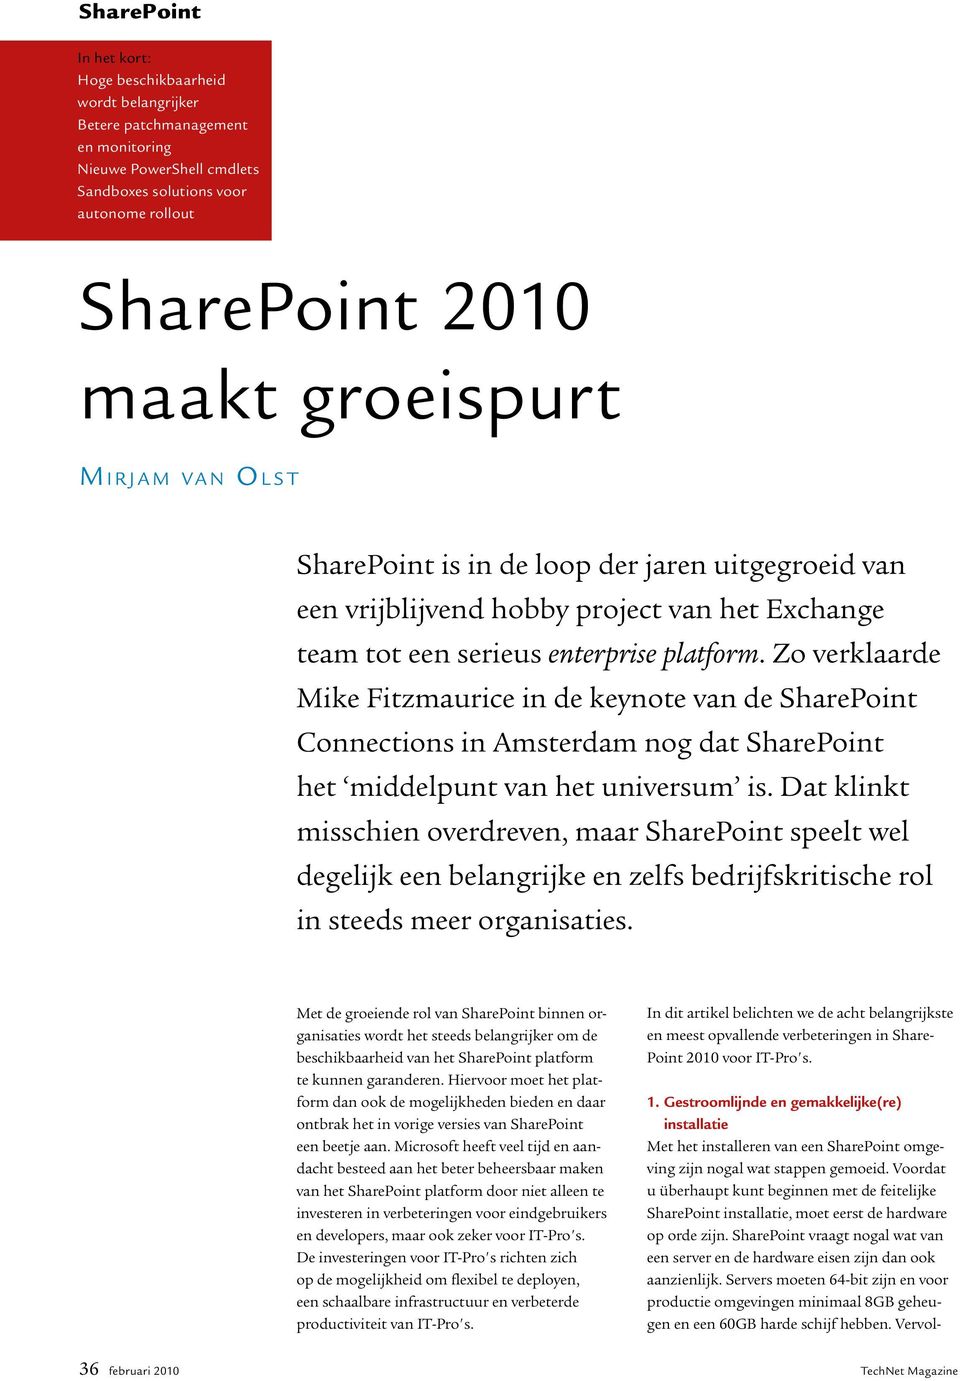 Zo verklaarde Mike Fitzmaurice in de keynote van de SharePoint Connections in Amsterdam nog dat SharePoint het middelpunt van het universum is.